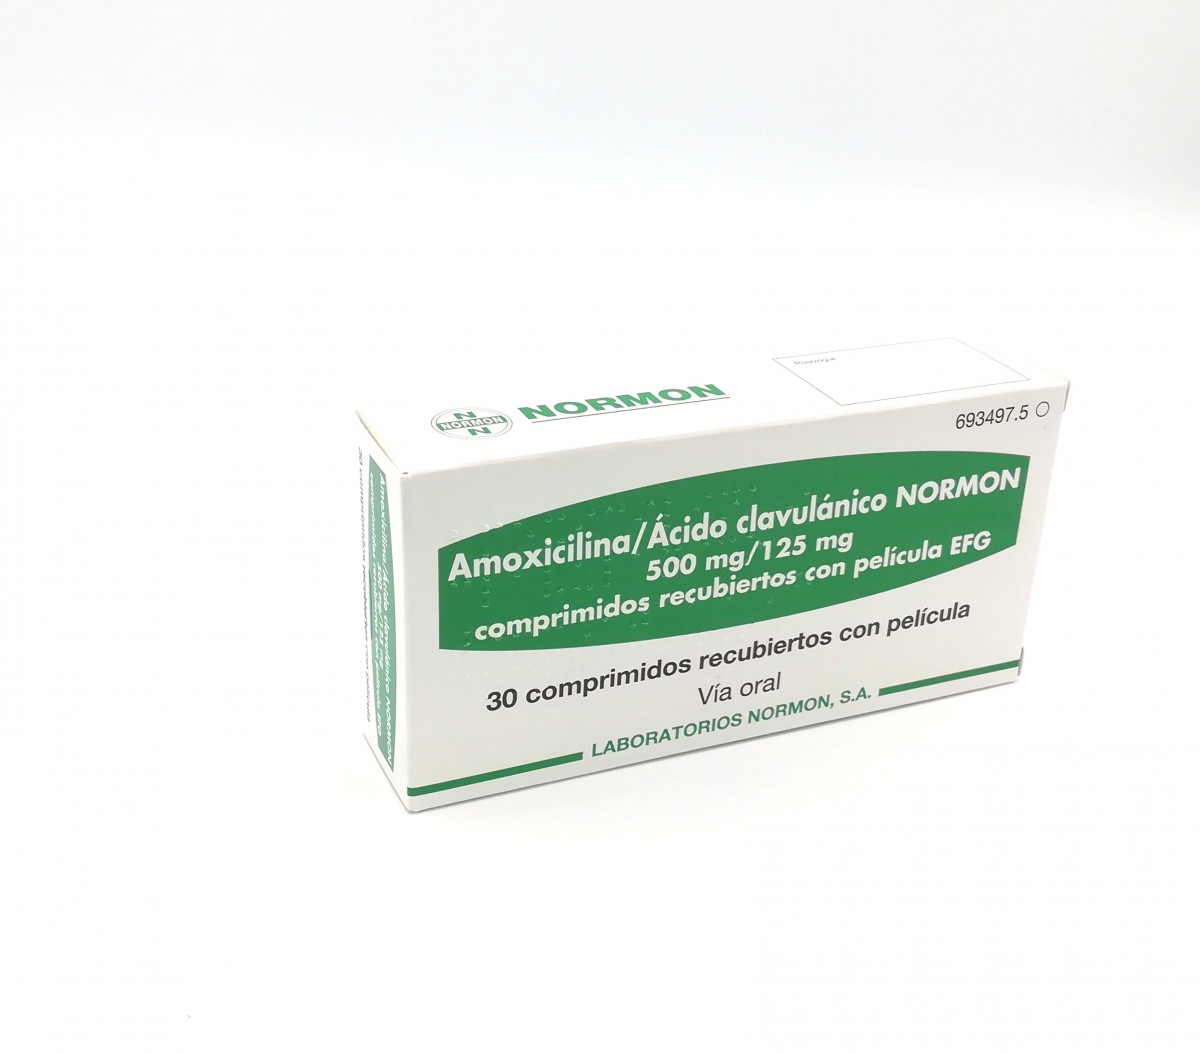 AMOXICILINA/ACIDO CLAVULANICO NORMON 500 mg /125 mg COMPRIMIDOS RECUBIERTOS CON PELICULA EFG, 12 comprimidos fotografía del envase.